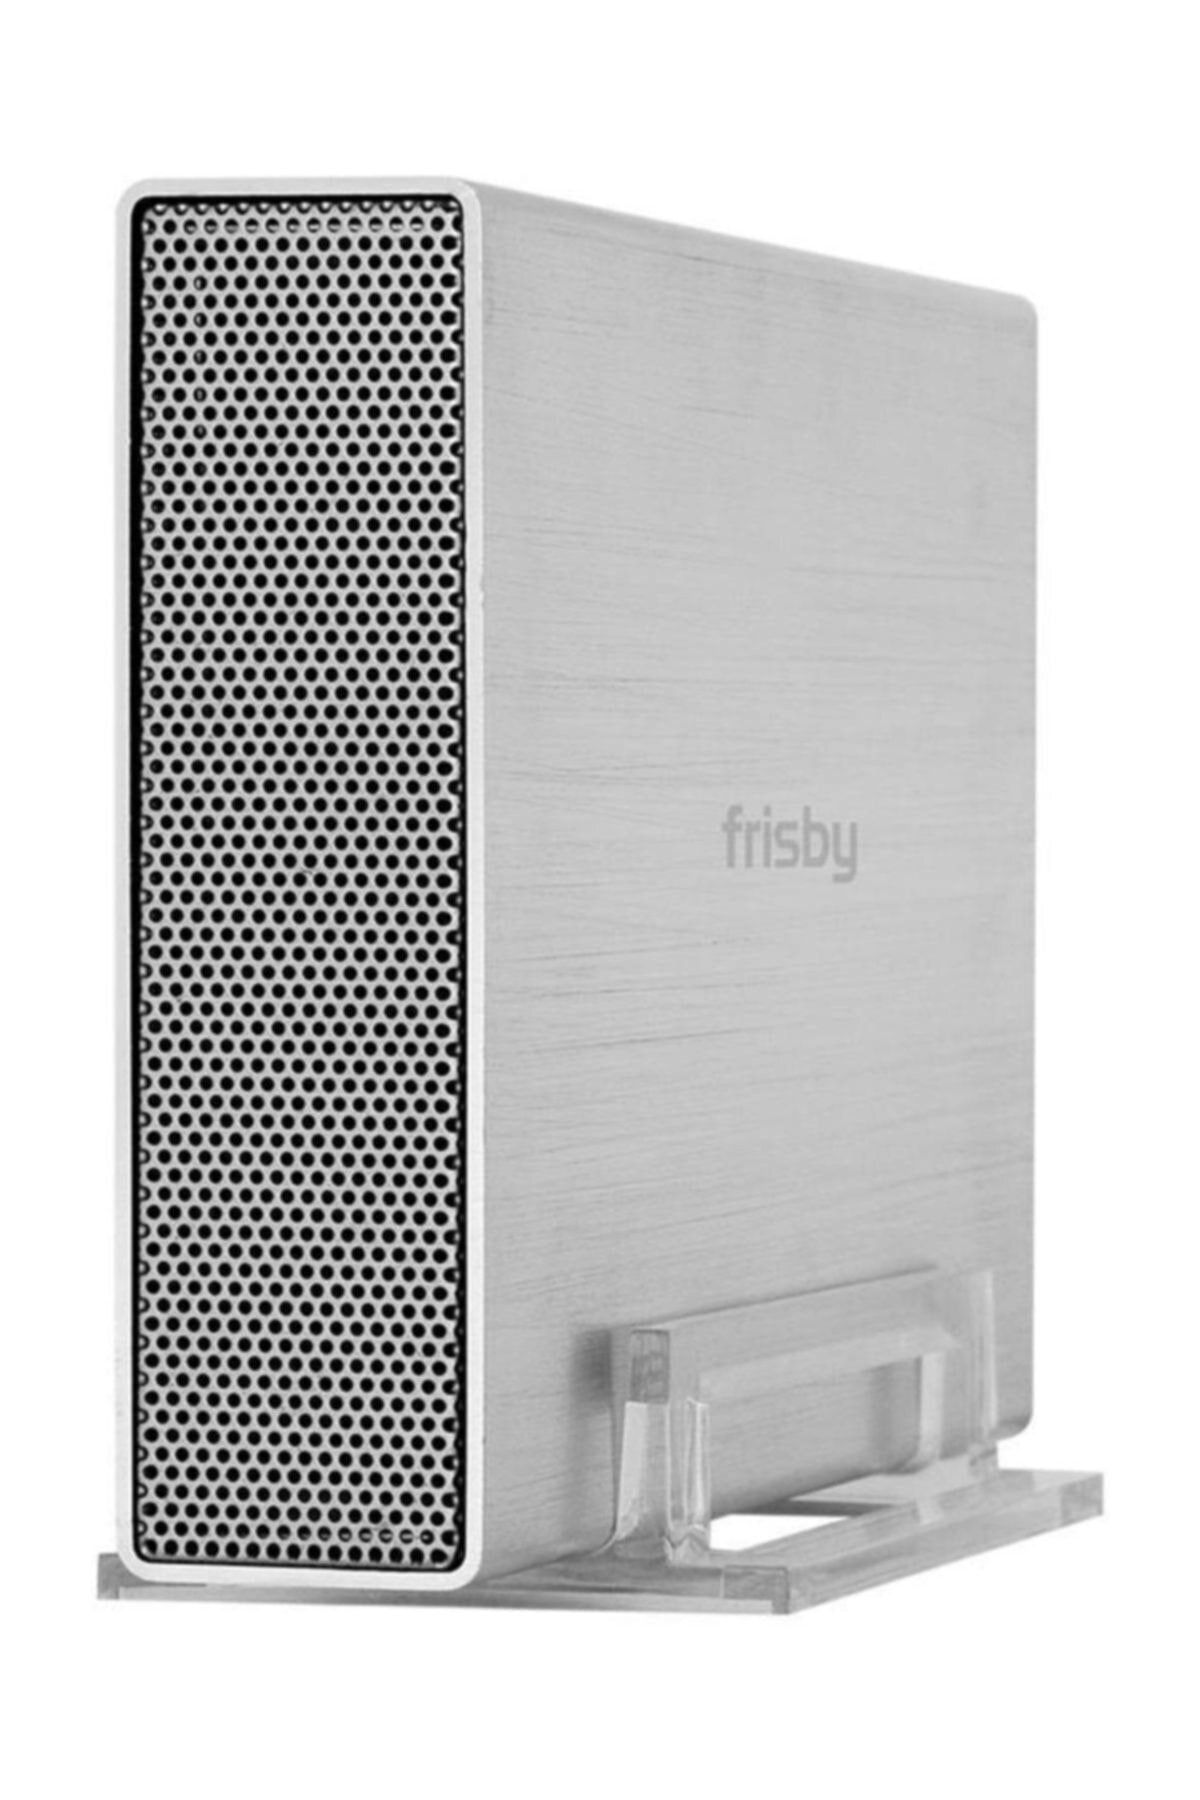 Frisby Fhc-3520s 3.5" Usb 3.0 Hdd Kutusu